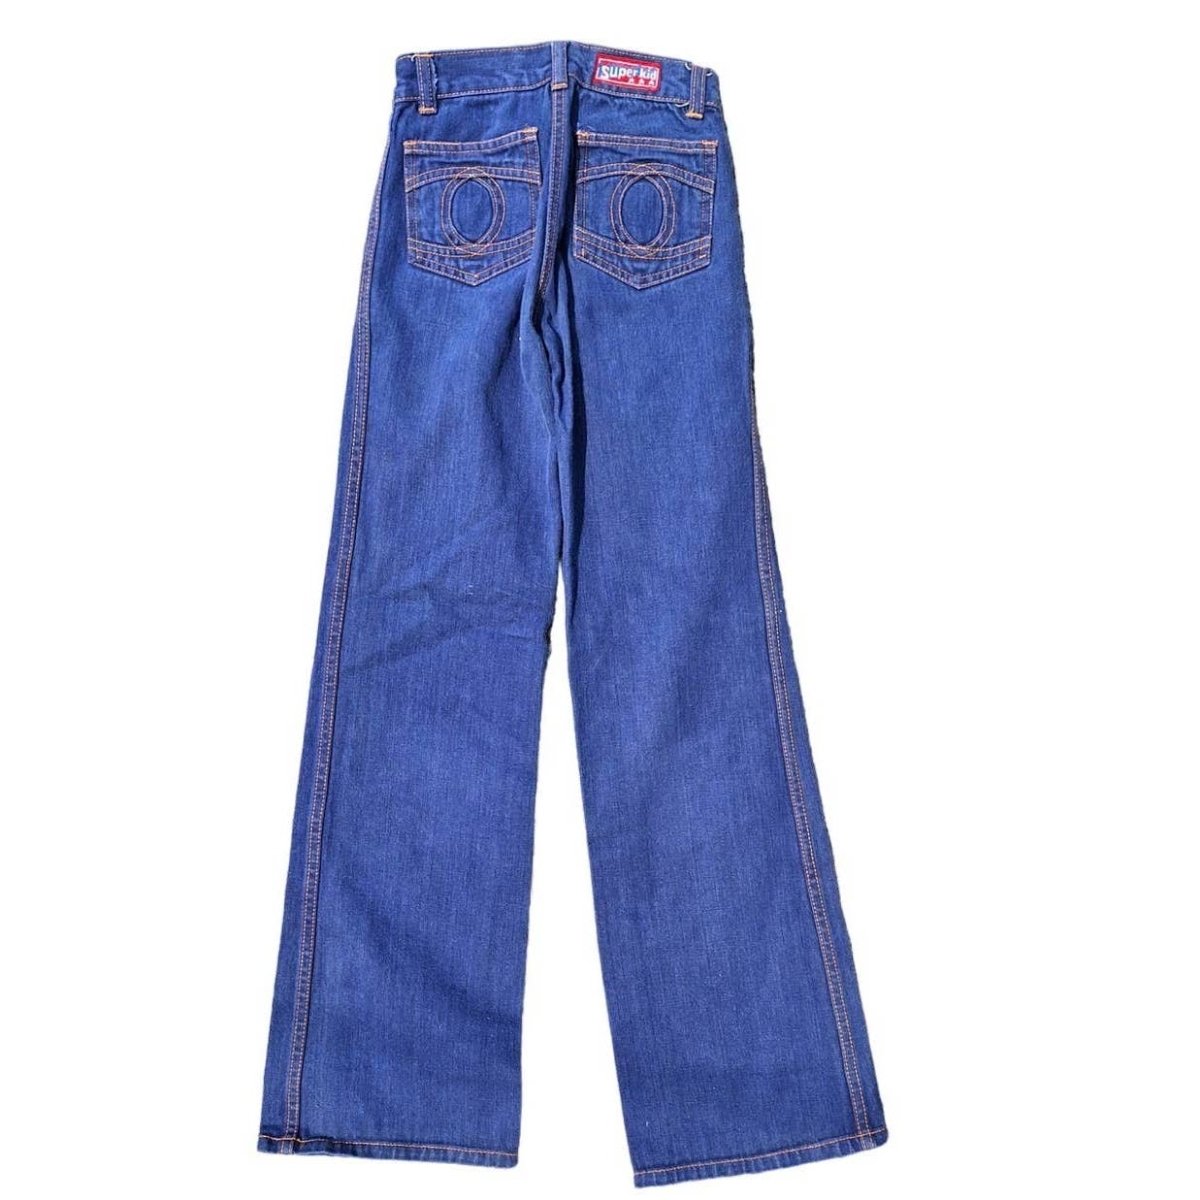 70s Dark Wash Jeans Unisex Kids Size 8 Slim - themallvintage The Mall Vintage